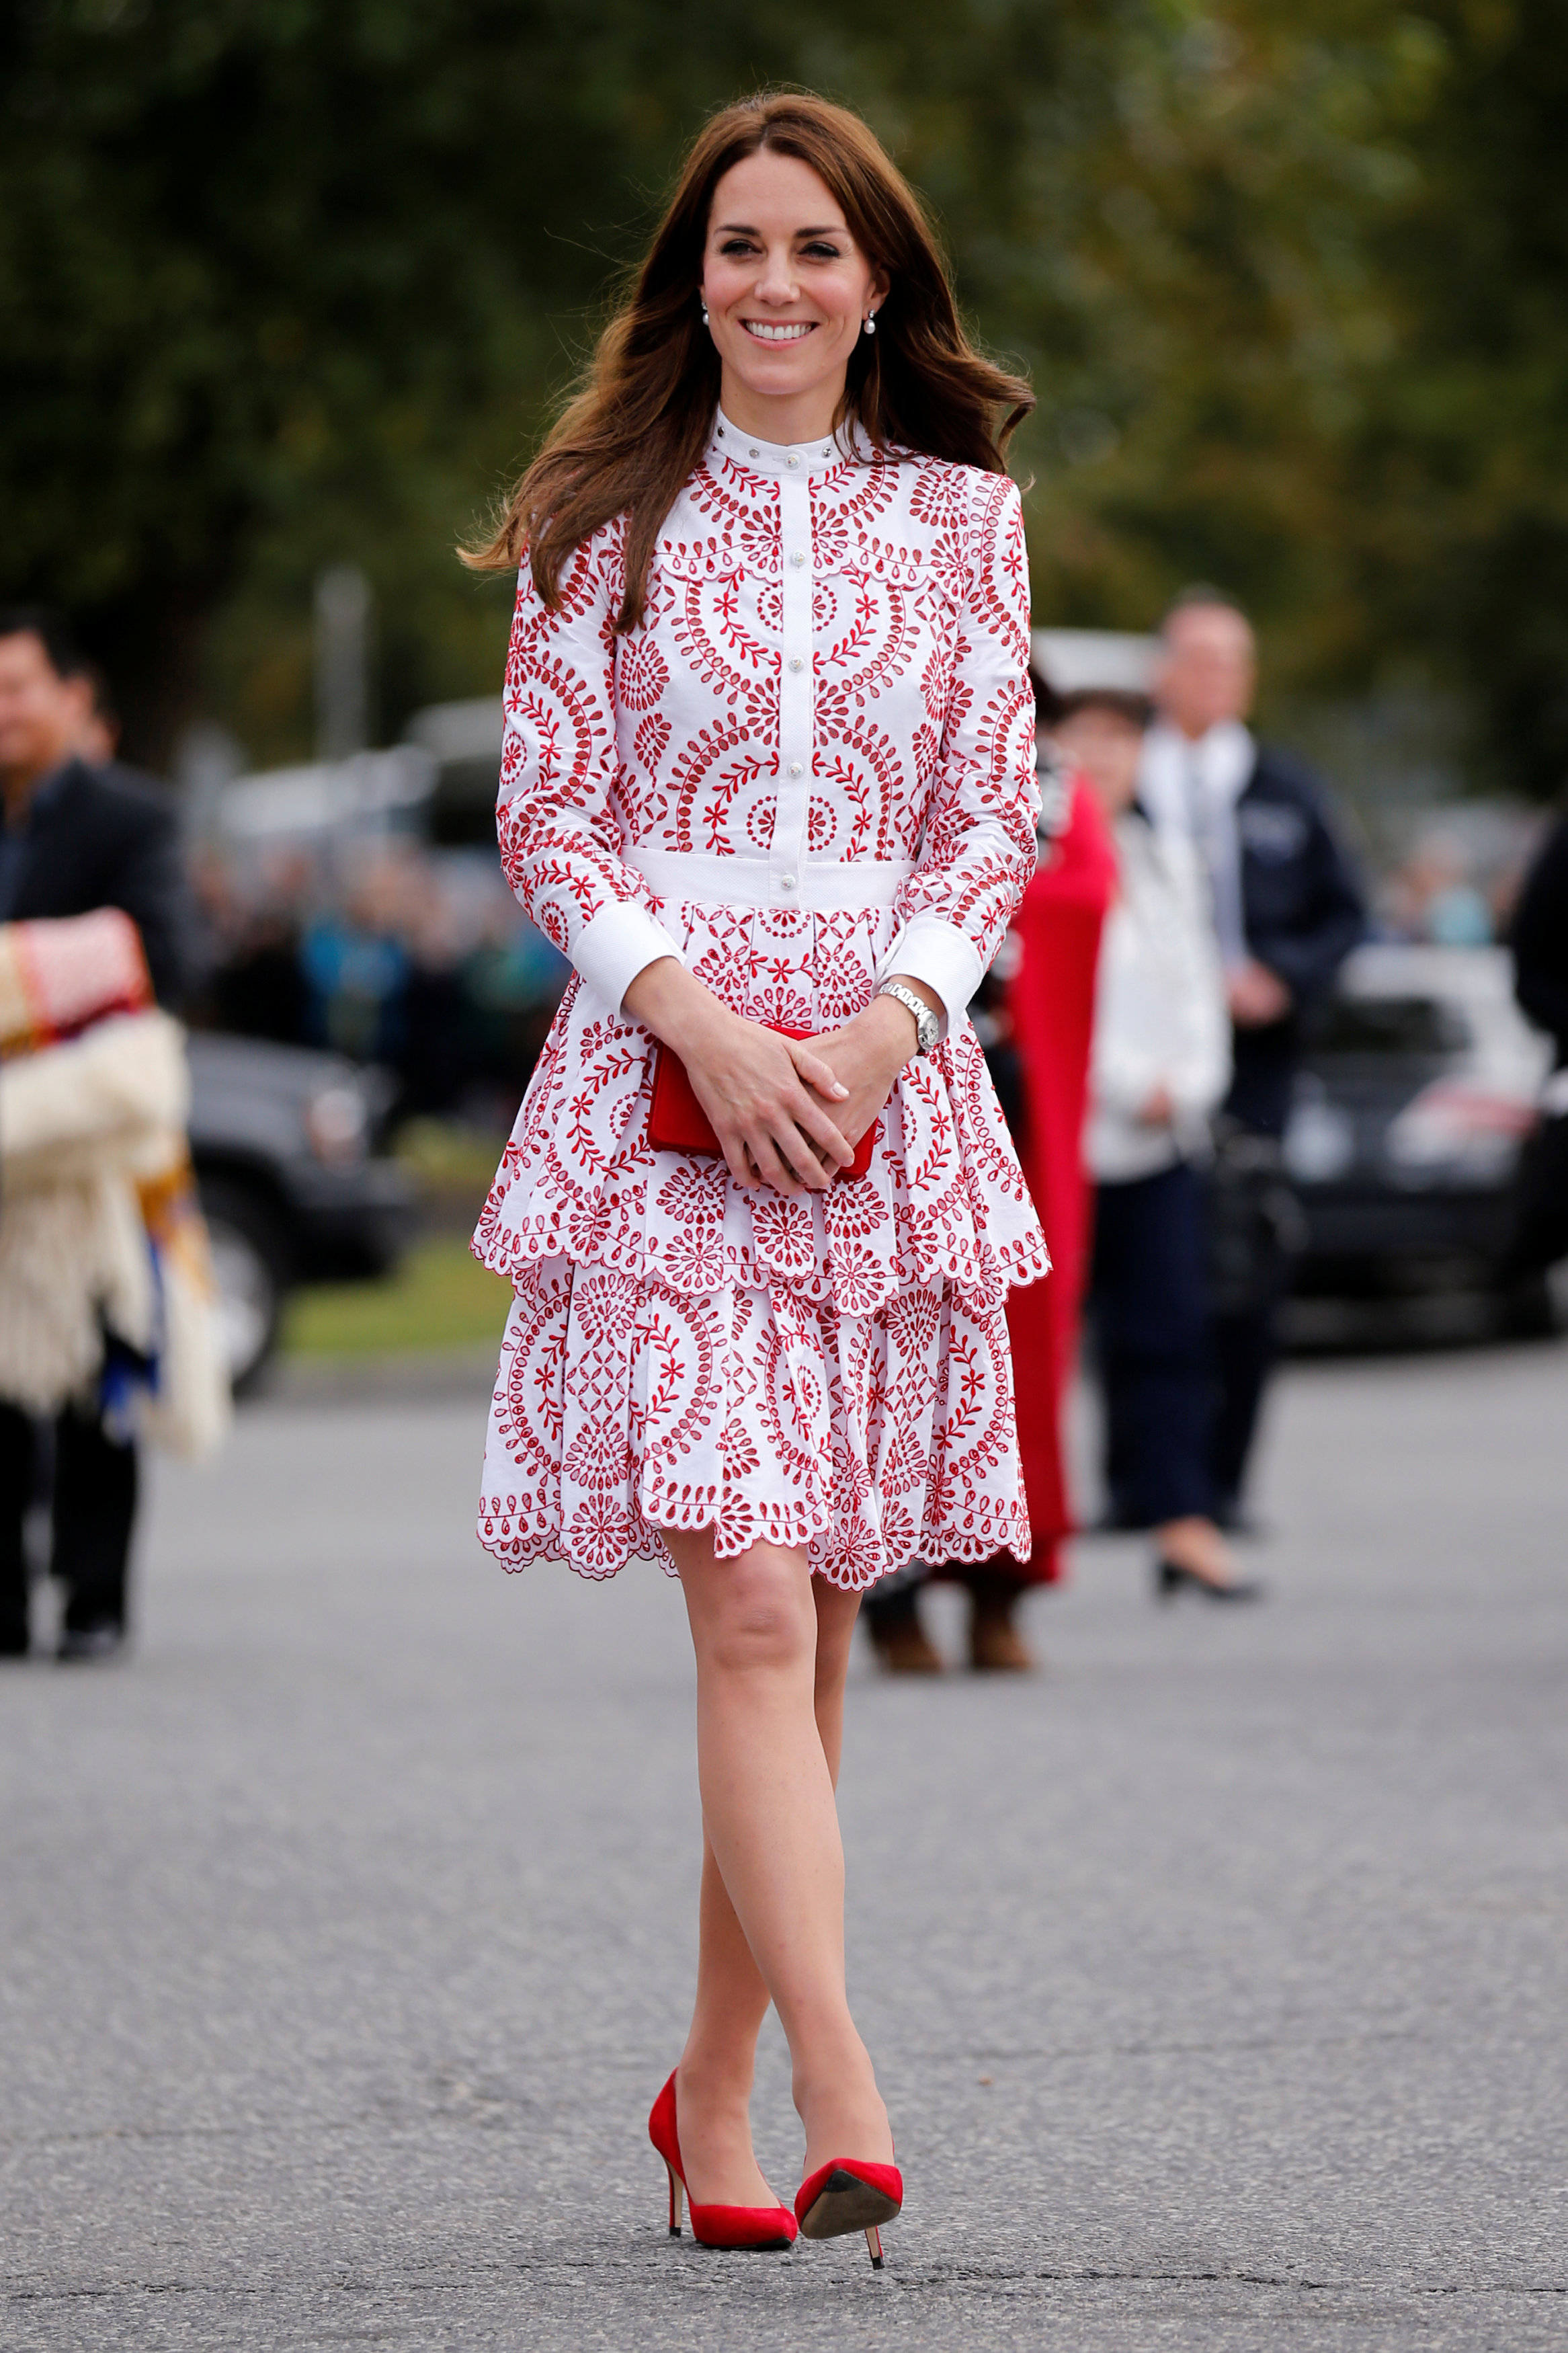 凯特一袭红白花纹连衣裙现身温哥华，让许多网民大赞美翻了。-路透社-